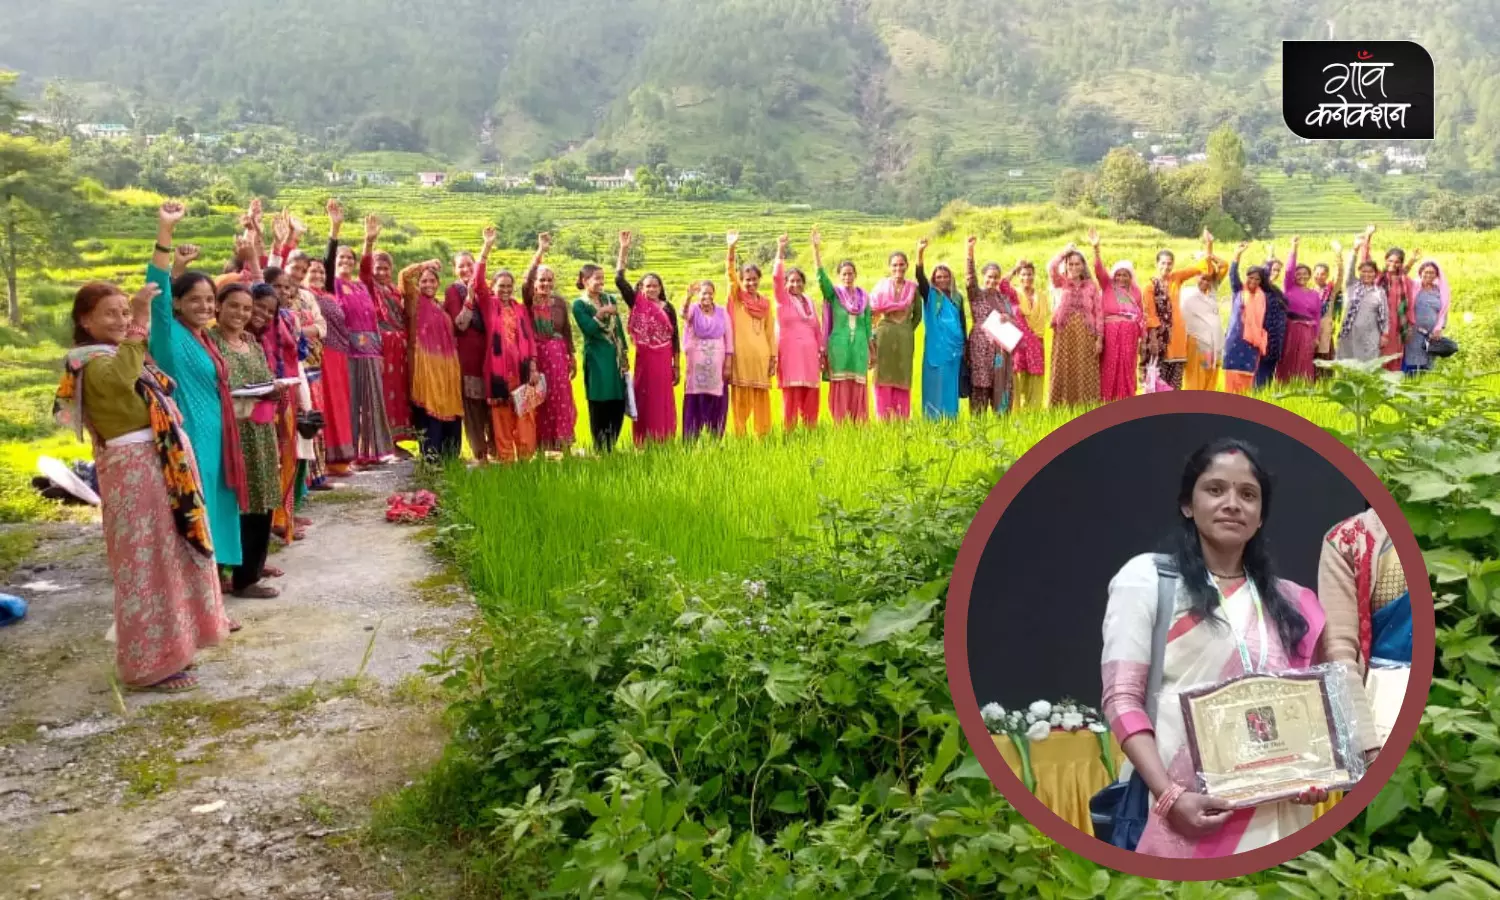 सर्वश्रेष्ठ किसान पुरस्कार से सम्मानित उत्तराखंड की खष्ठी देवी ने बदल दी हजारों महिला किसानों की जिंदगी